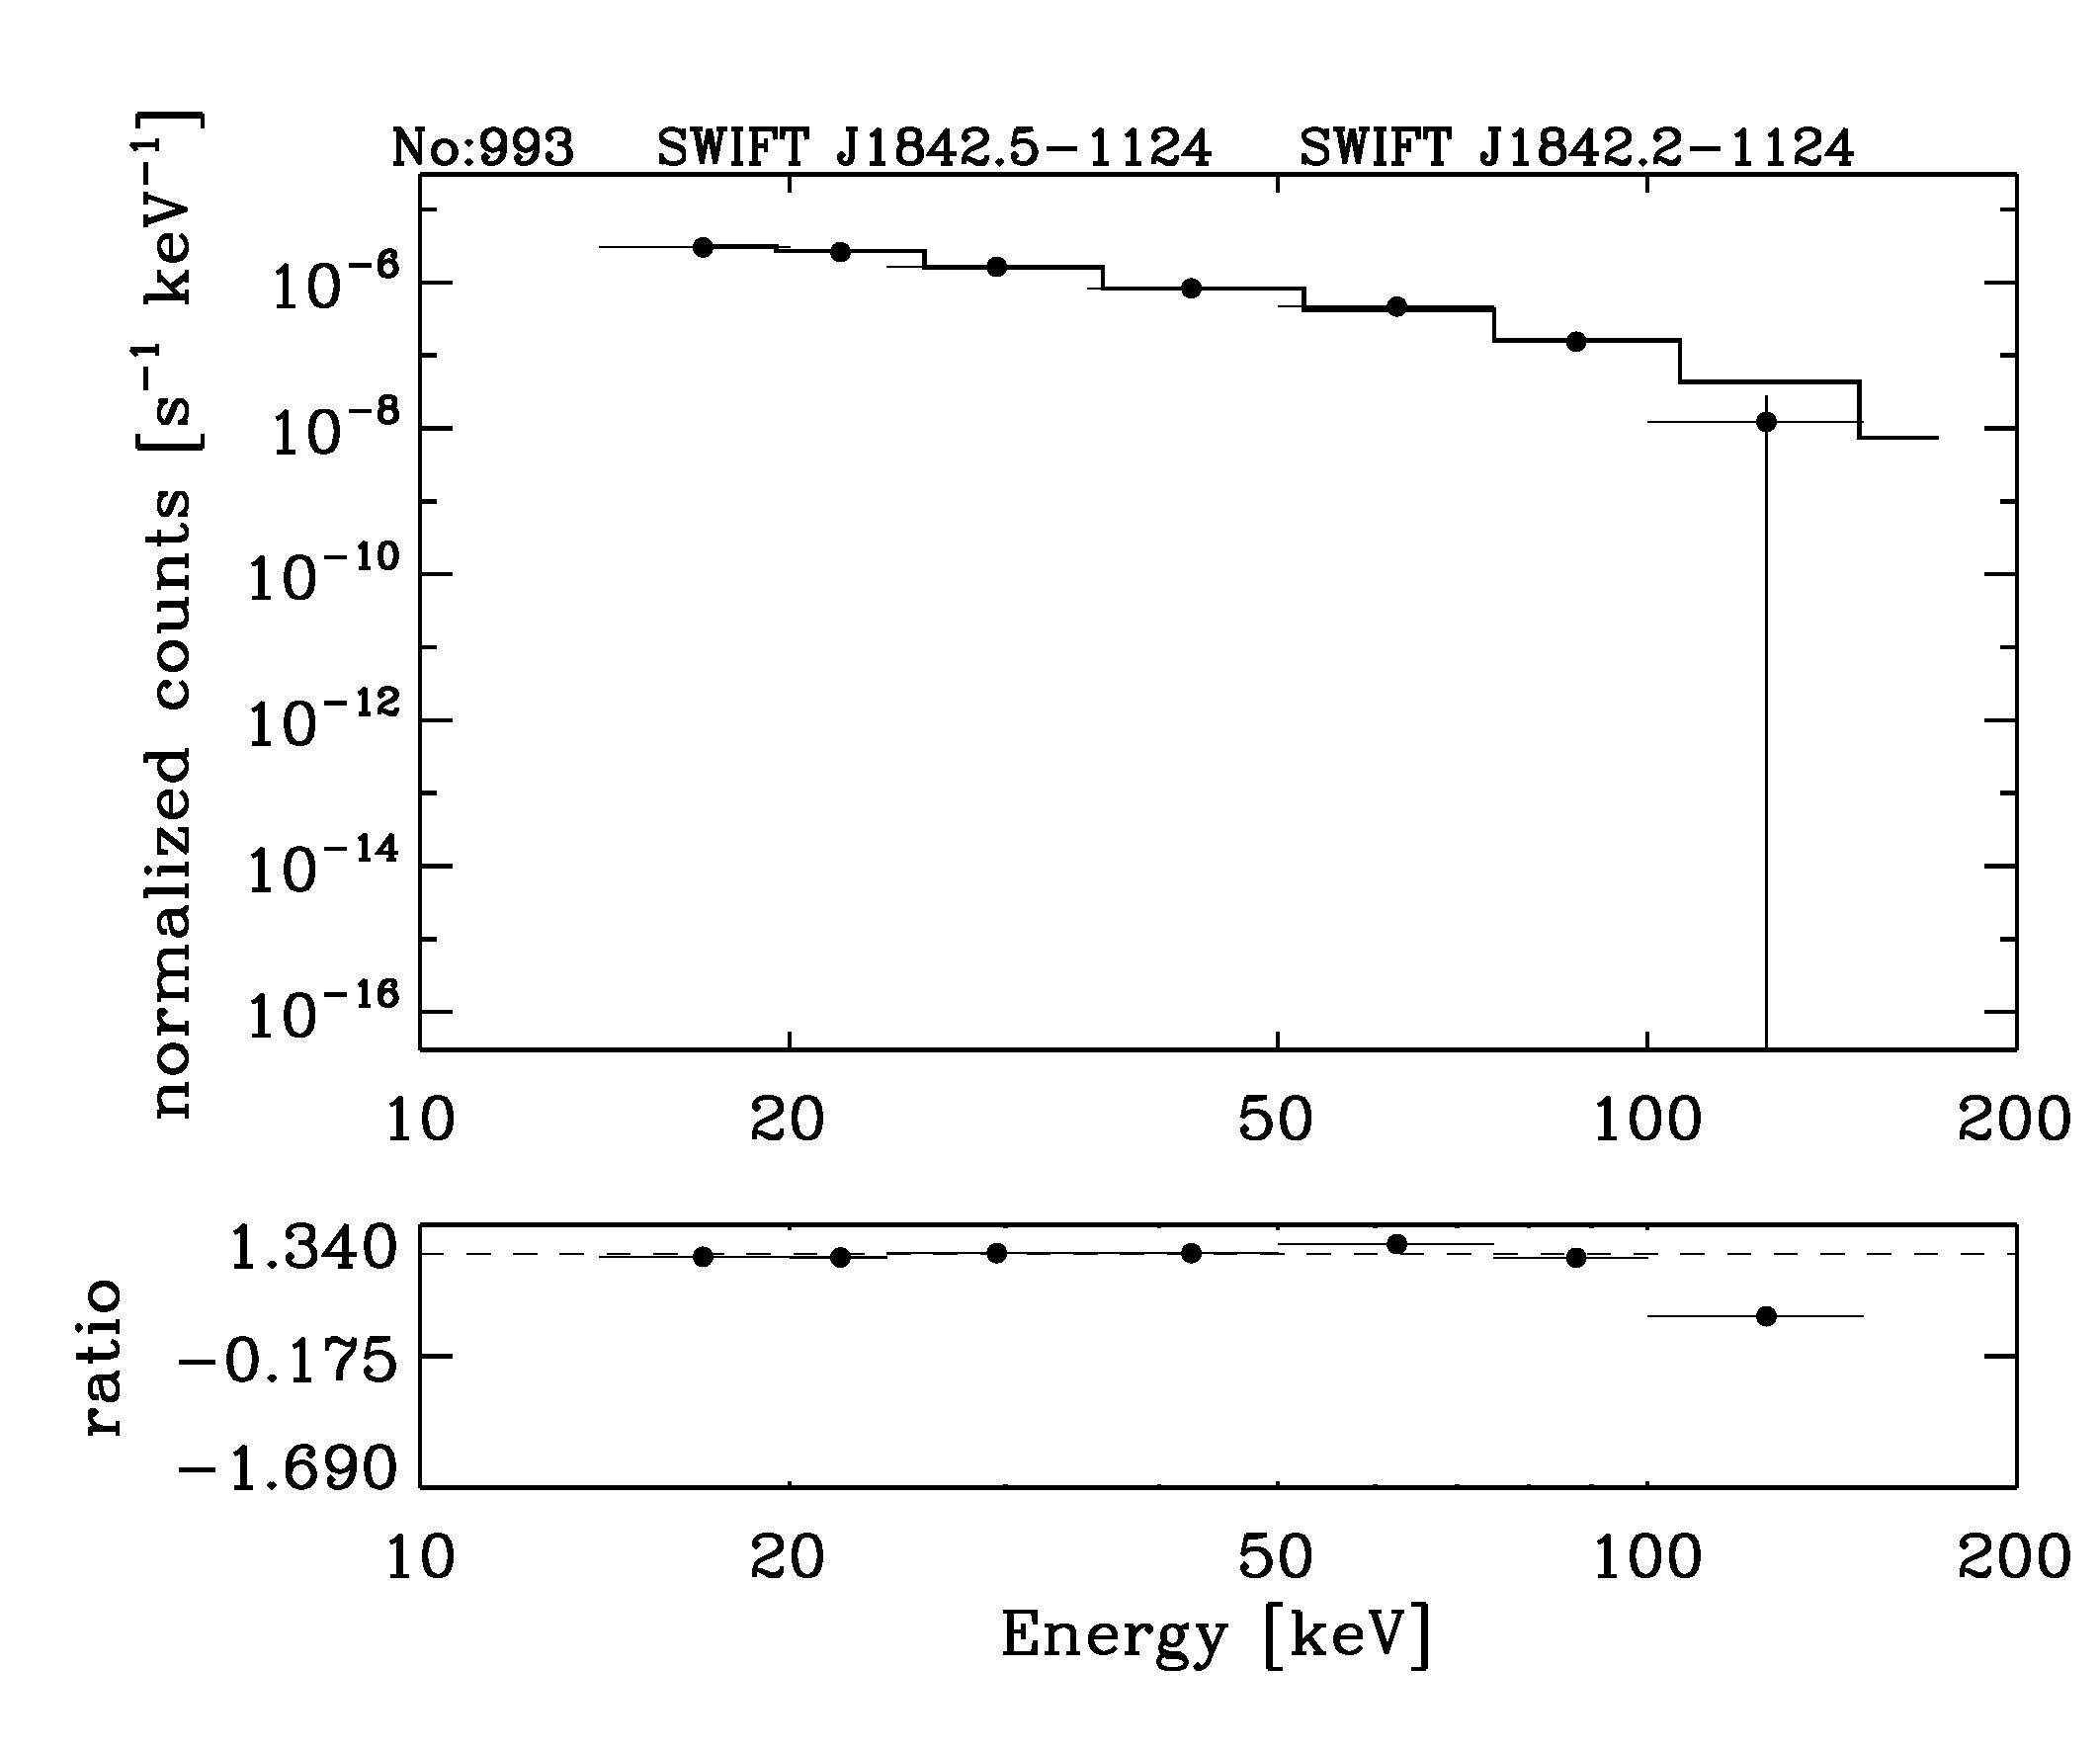 BAT Spectrum for SWIFT J1842.5-1124